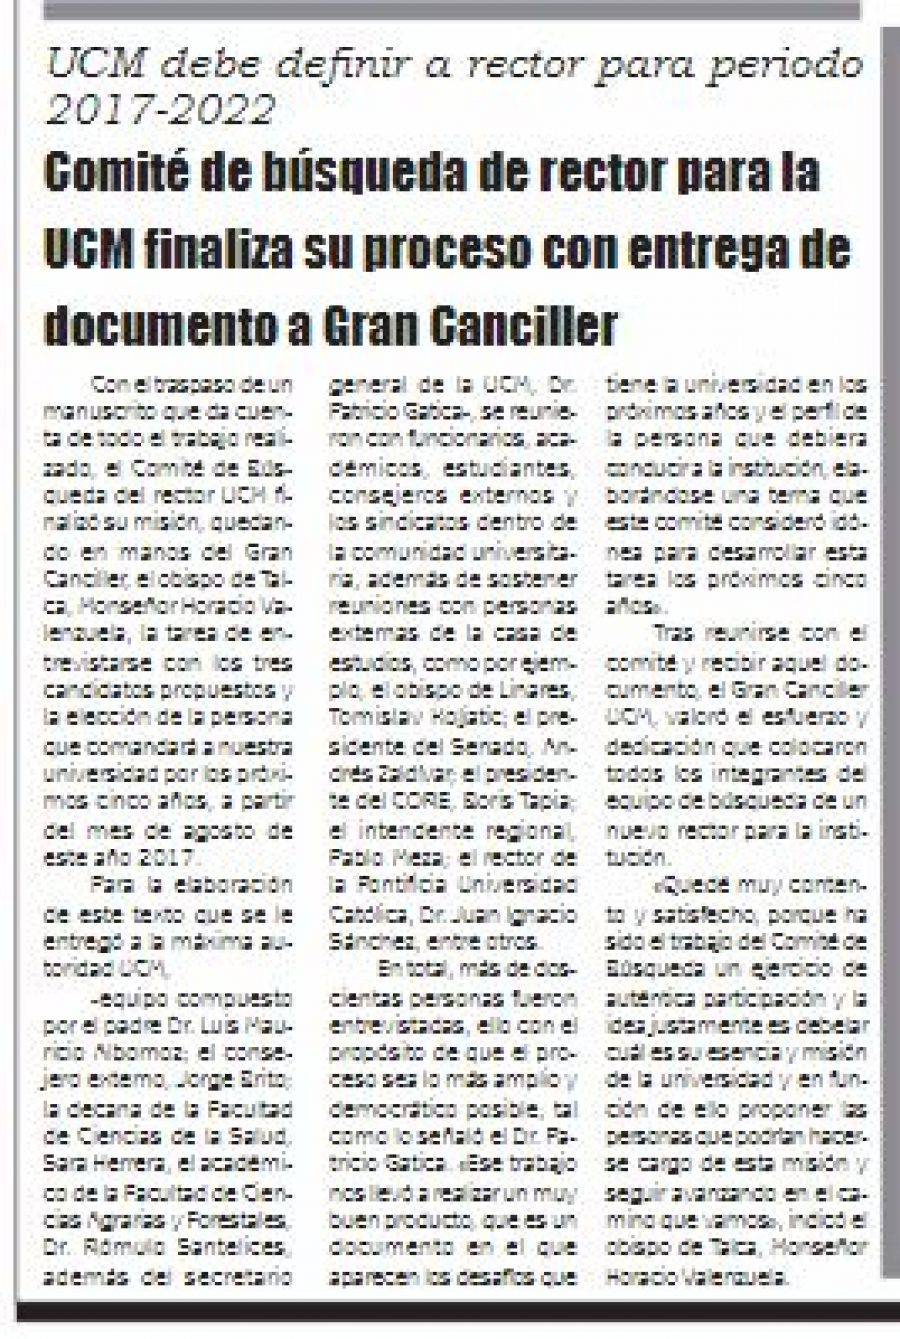 24 de junio en Diario El Lector: “Comité de búsqueda de rector para la UCM finaliza su proceso con entrega de documento a Gran Canciller”